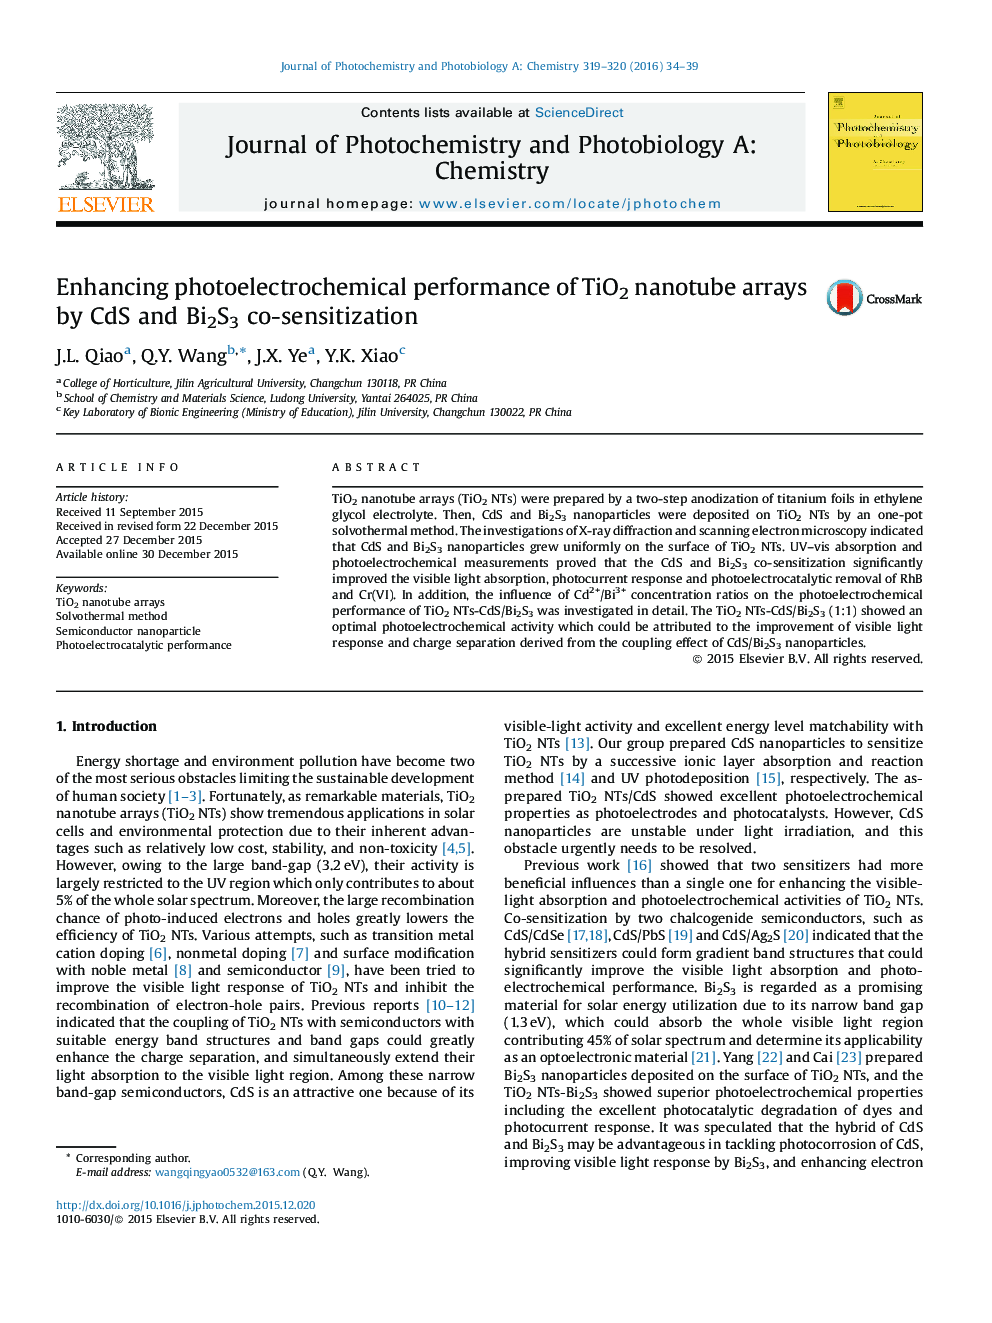 افزایش عملکرد فتوالکتروشیمیایی از آرایه های نانولوله TiO2 توسط CdS و Bi2S3 همکاری حساس